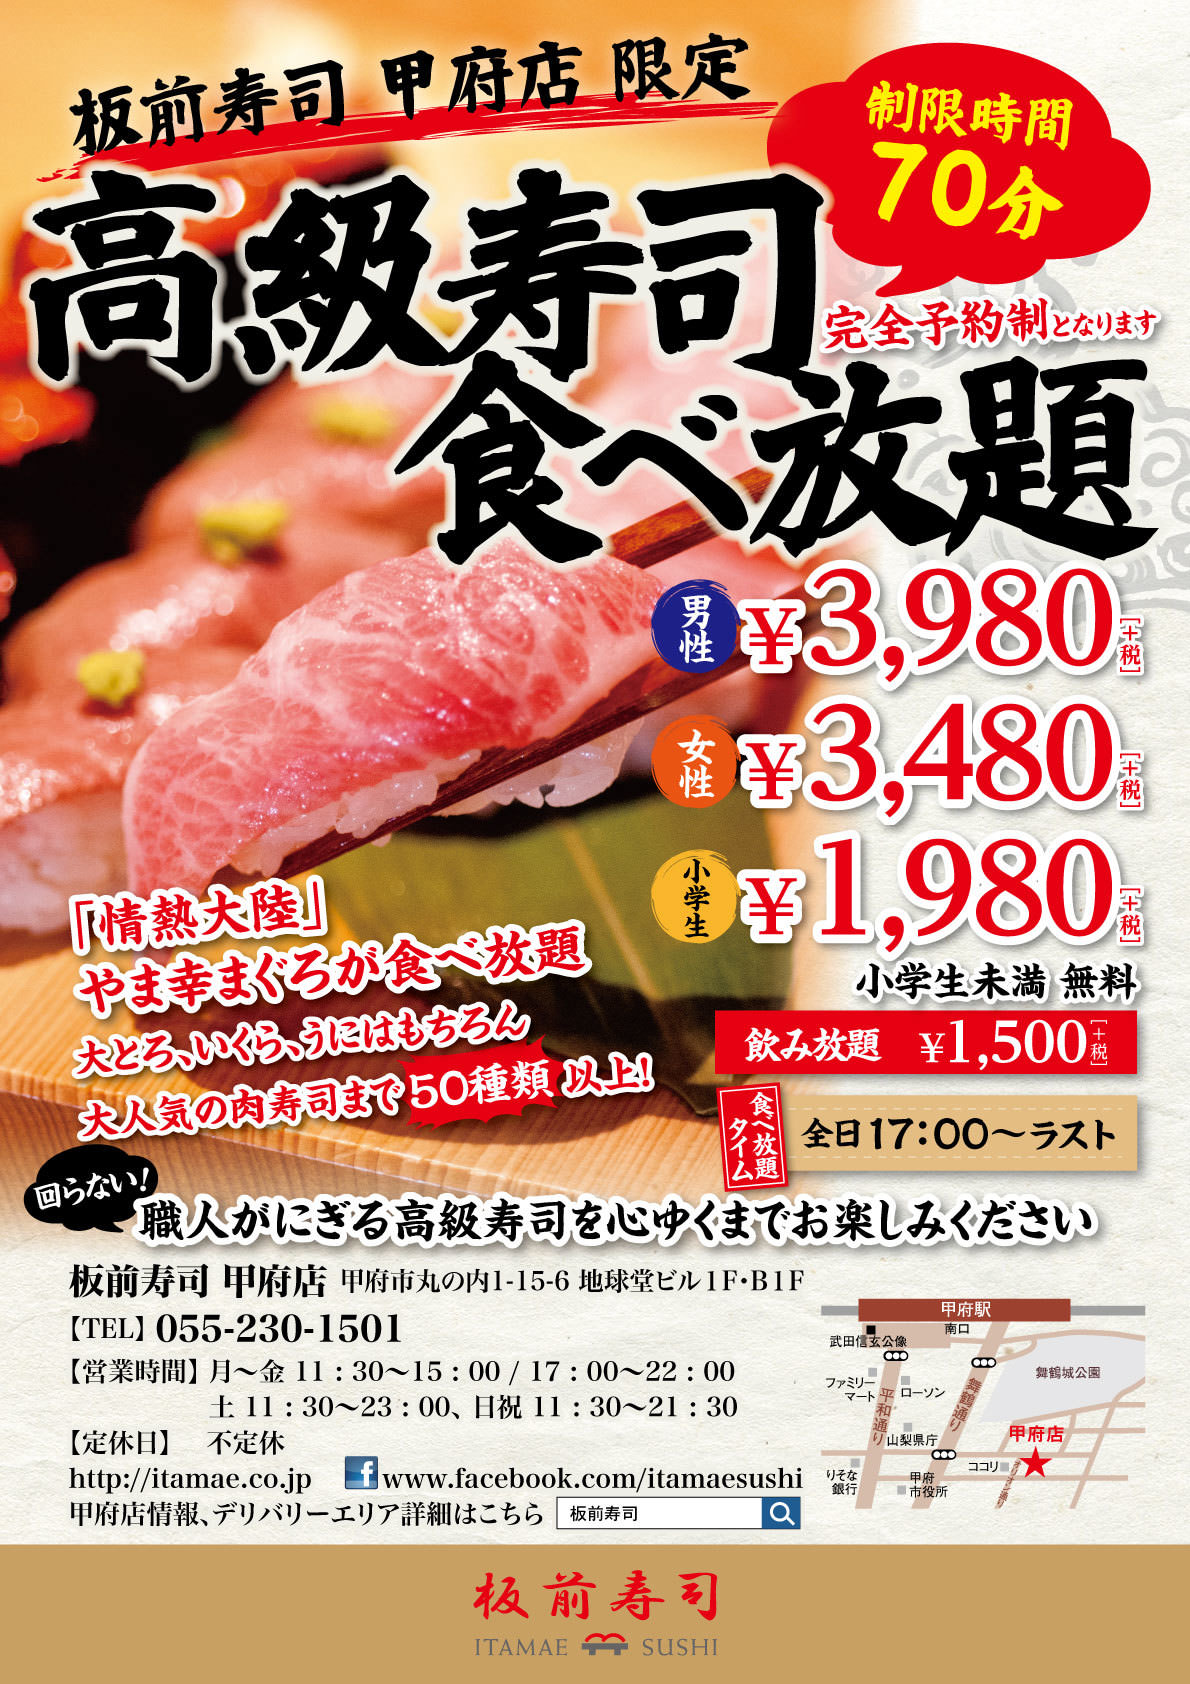 星野リゾート　トマム
北海道ならではの旬の食材をコースで提供するメインダイニング
「OTTO SETTE TOMAMU（オットセッテ トマム）」が誕生
オープン日：2019年7月1日